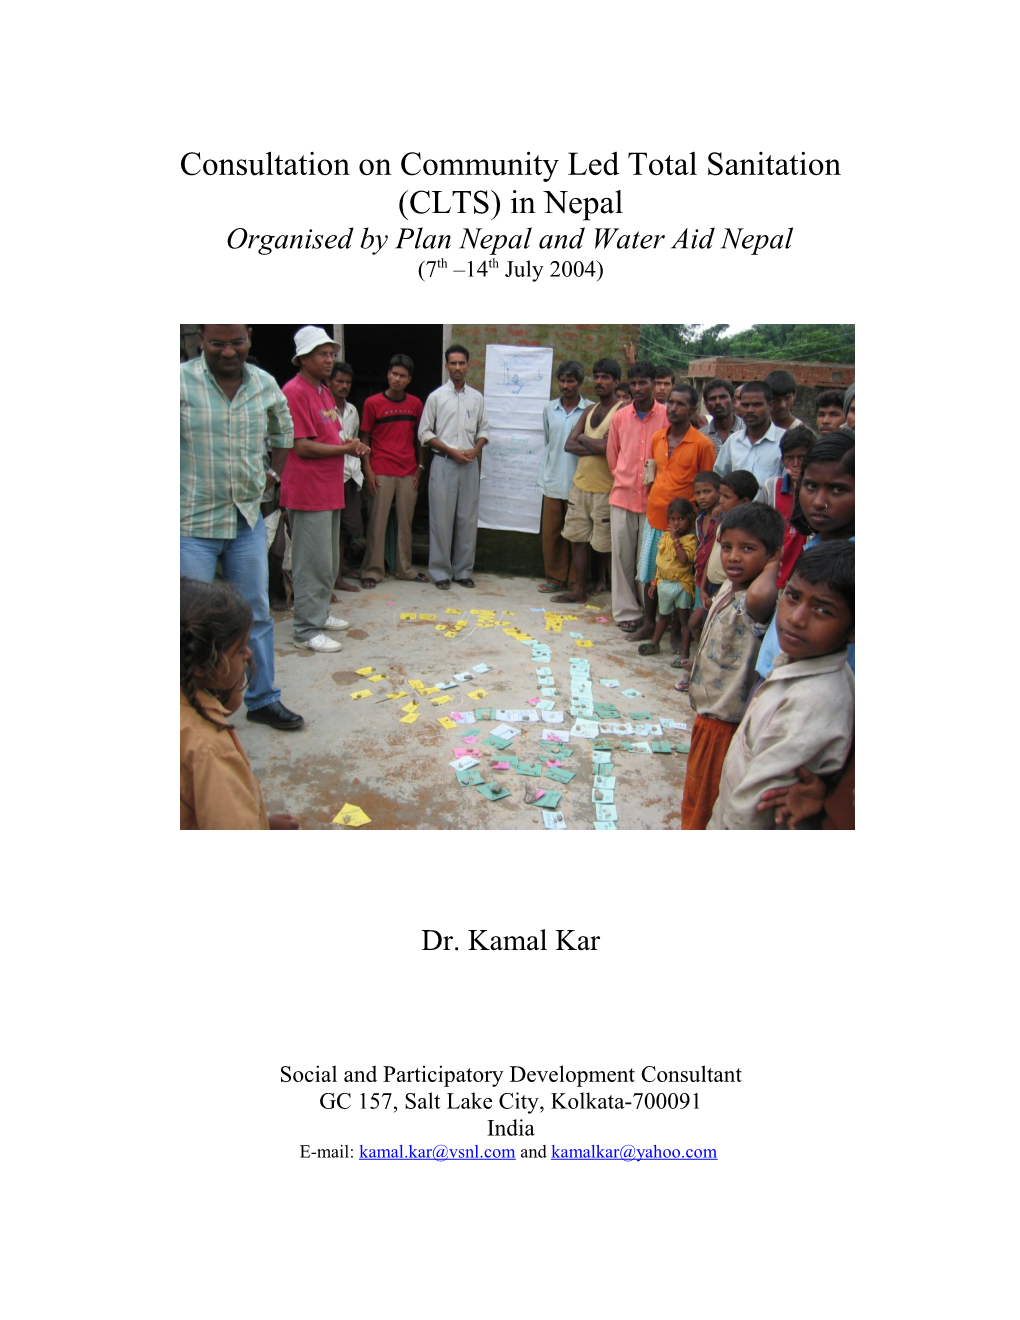 Workshop on Community Led Total Sanitation